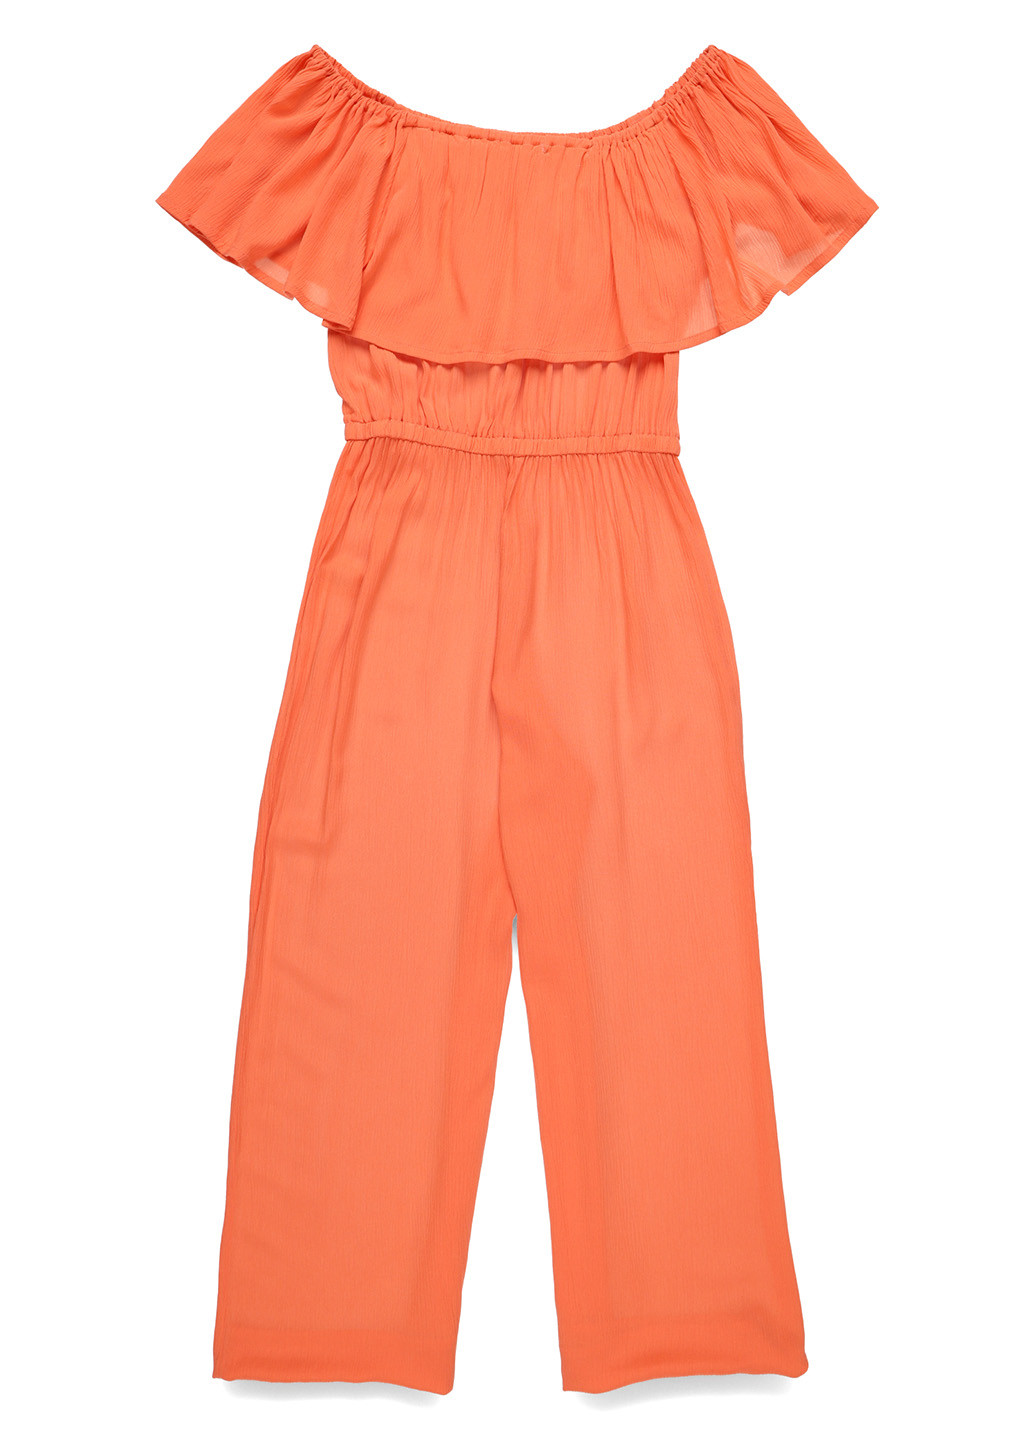 Комбинезон Studio комбинезон-брюки однотонный светло-оранжевый кэжуал вискоза